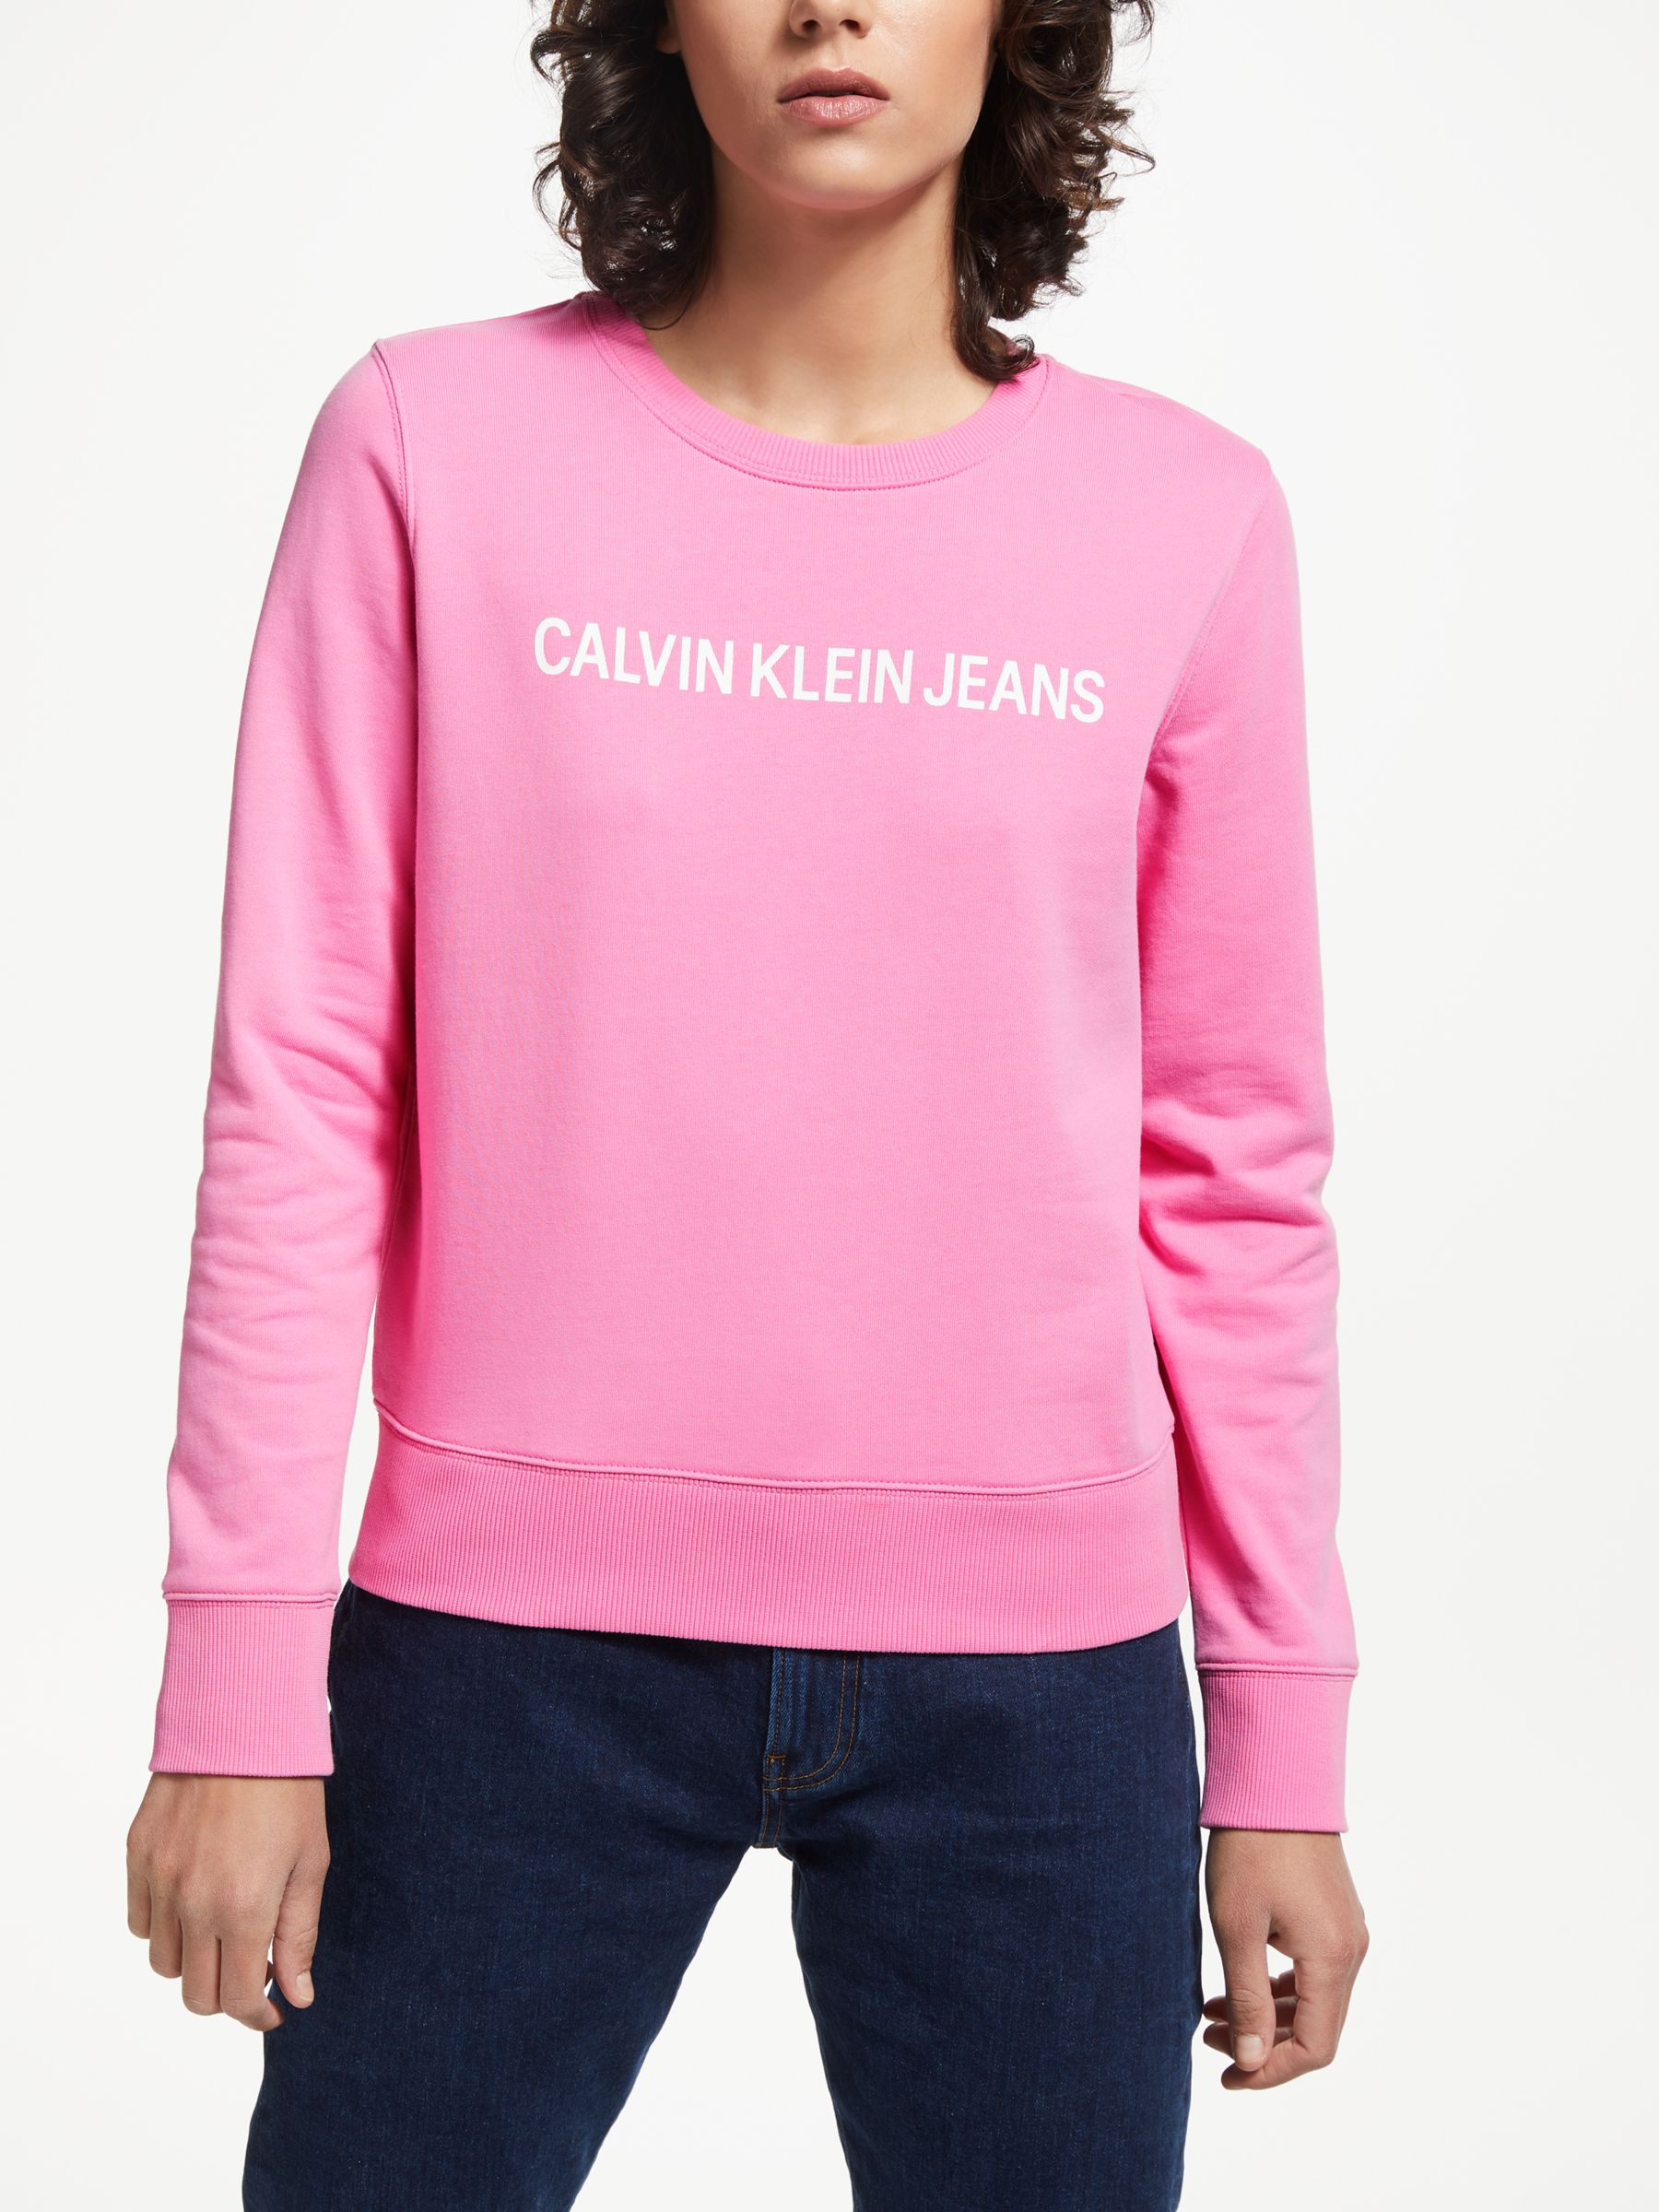 calvin klein jumper pink